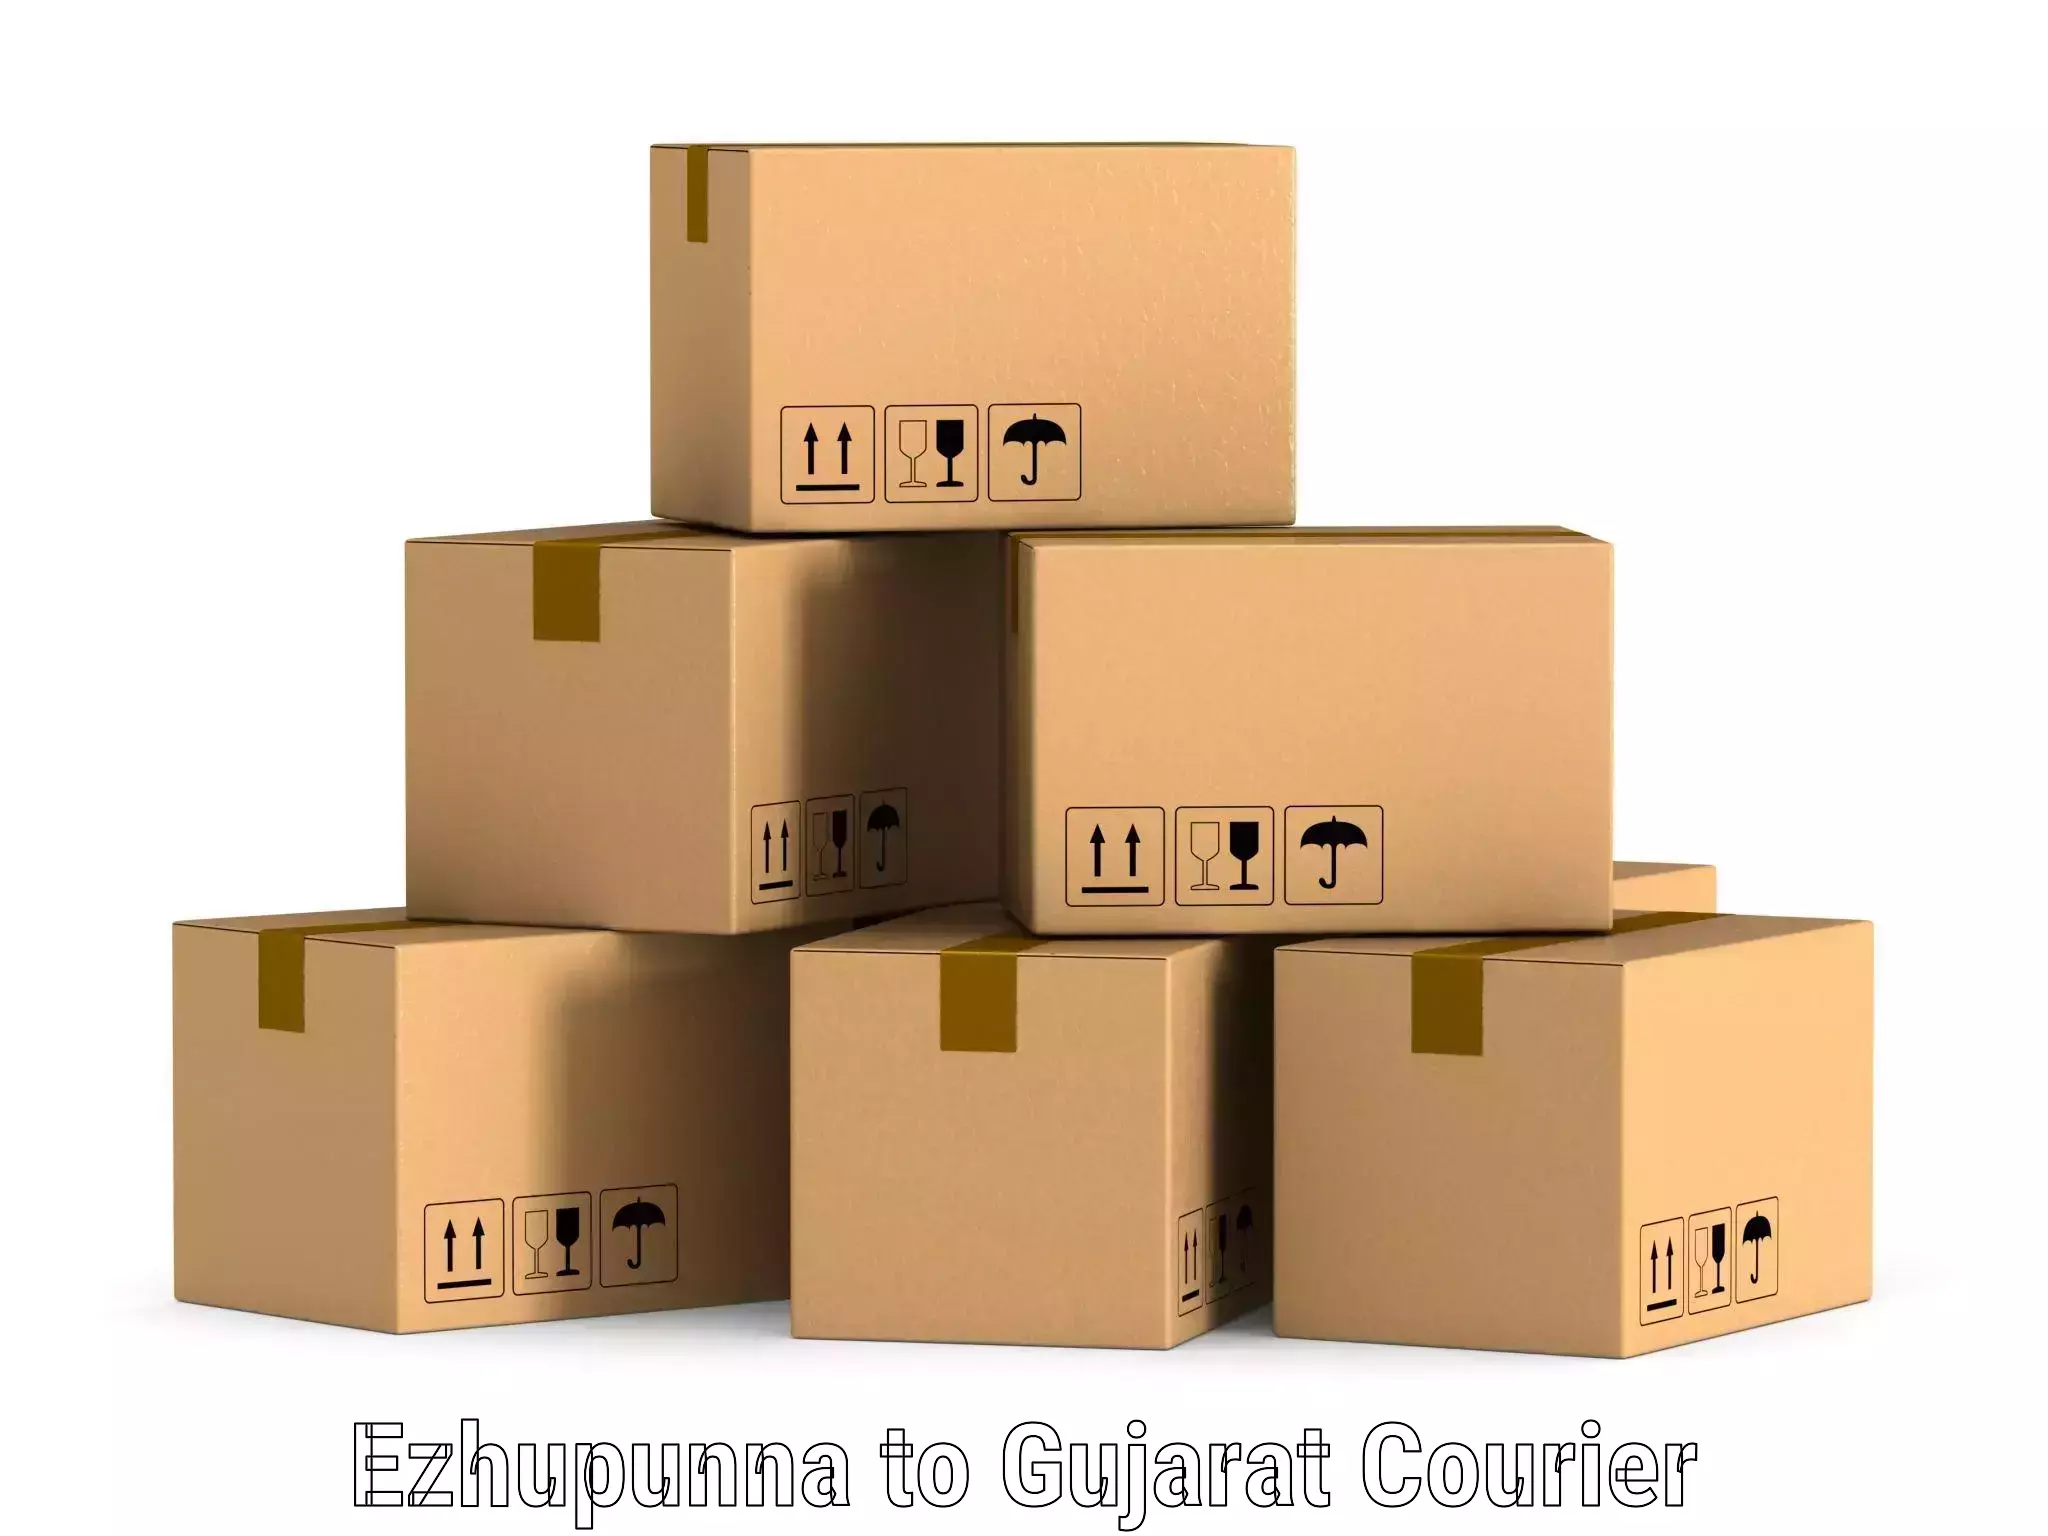 24-hour courier service Ezhupunna to Mandvi